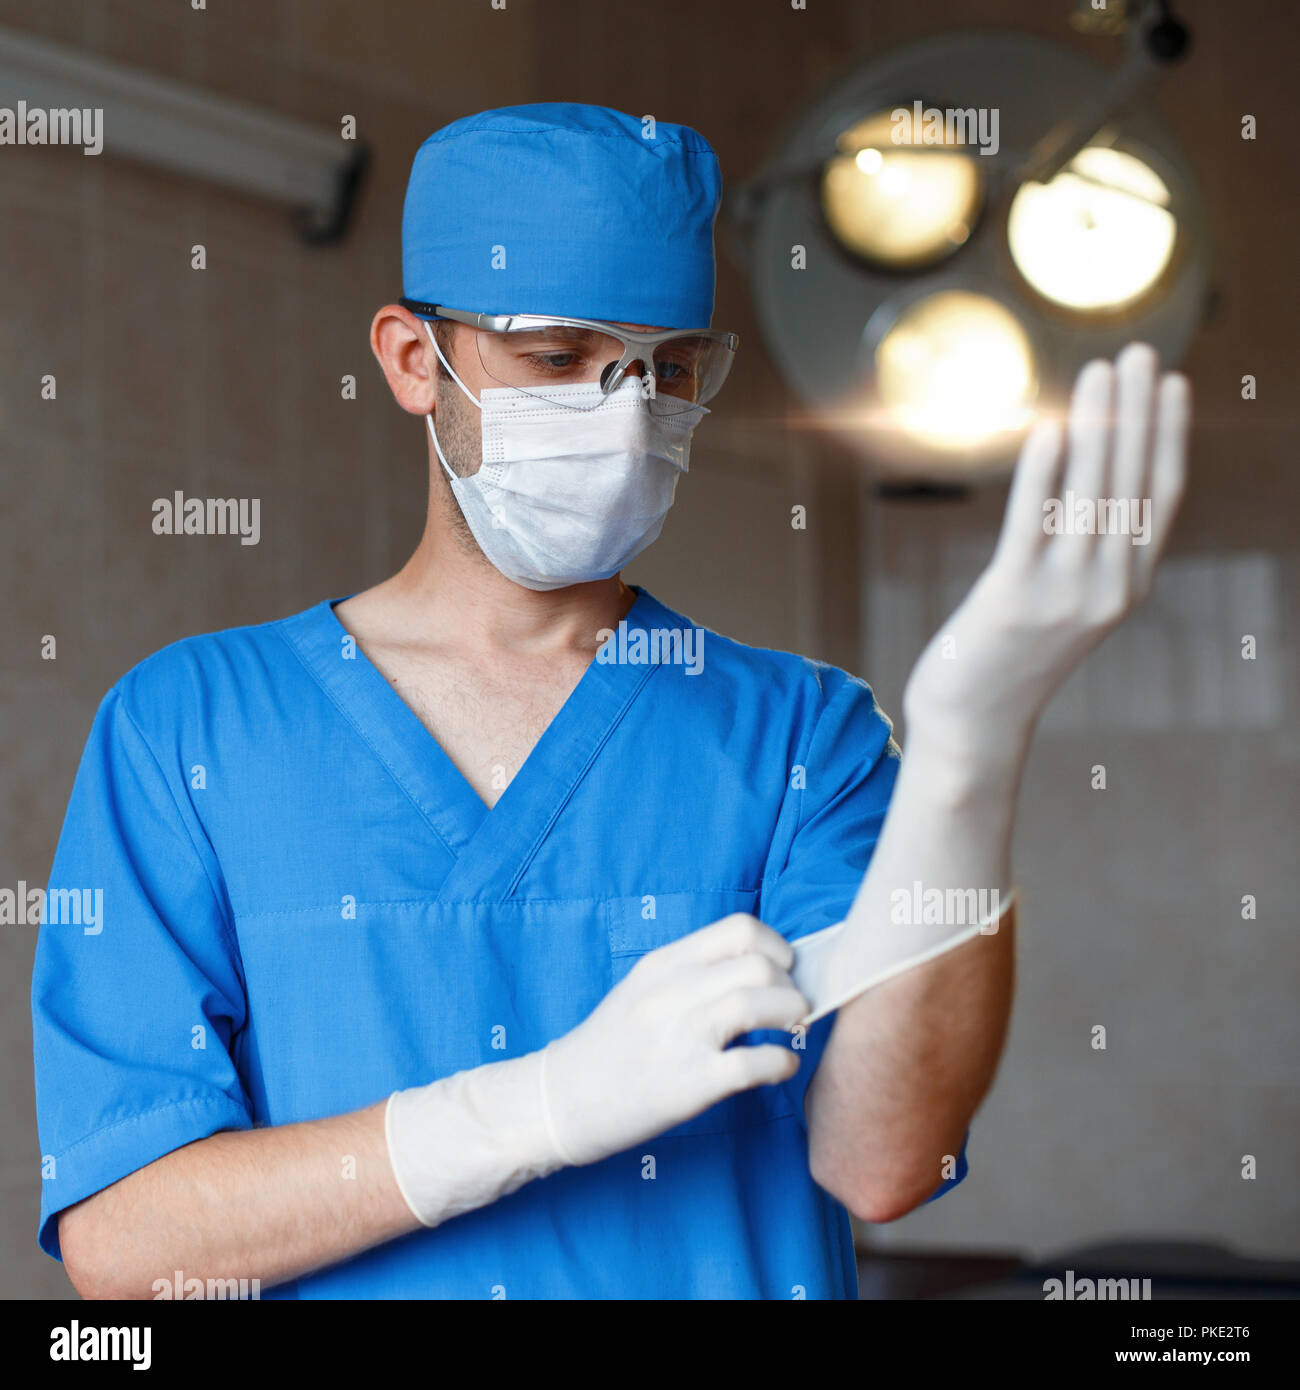 Подготовка рук к операции. Хирург обрабатывает руки. Хирургическая операция в перчатках. Хирурги готовятся к операции.